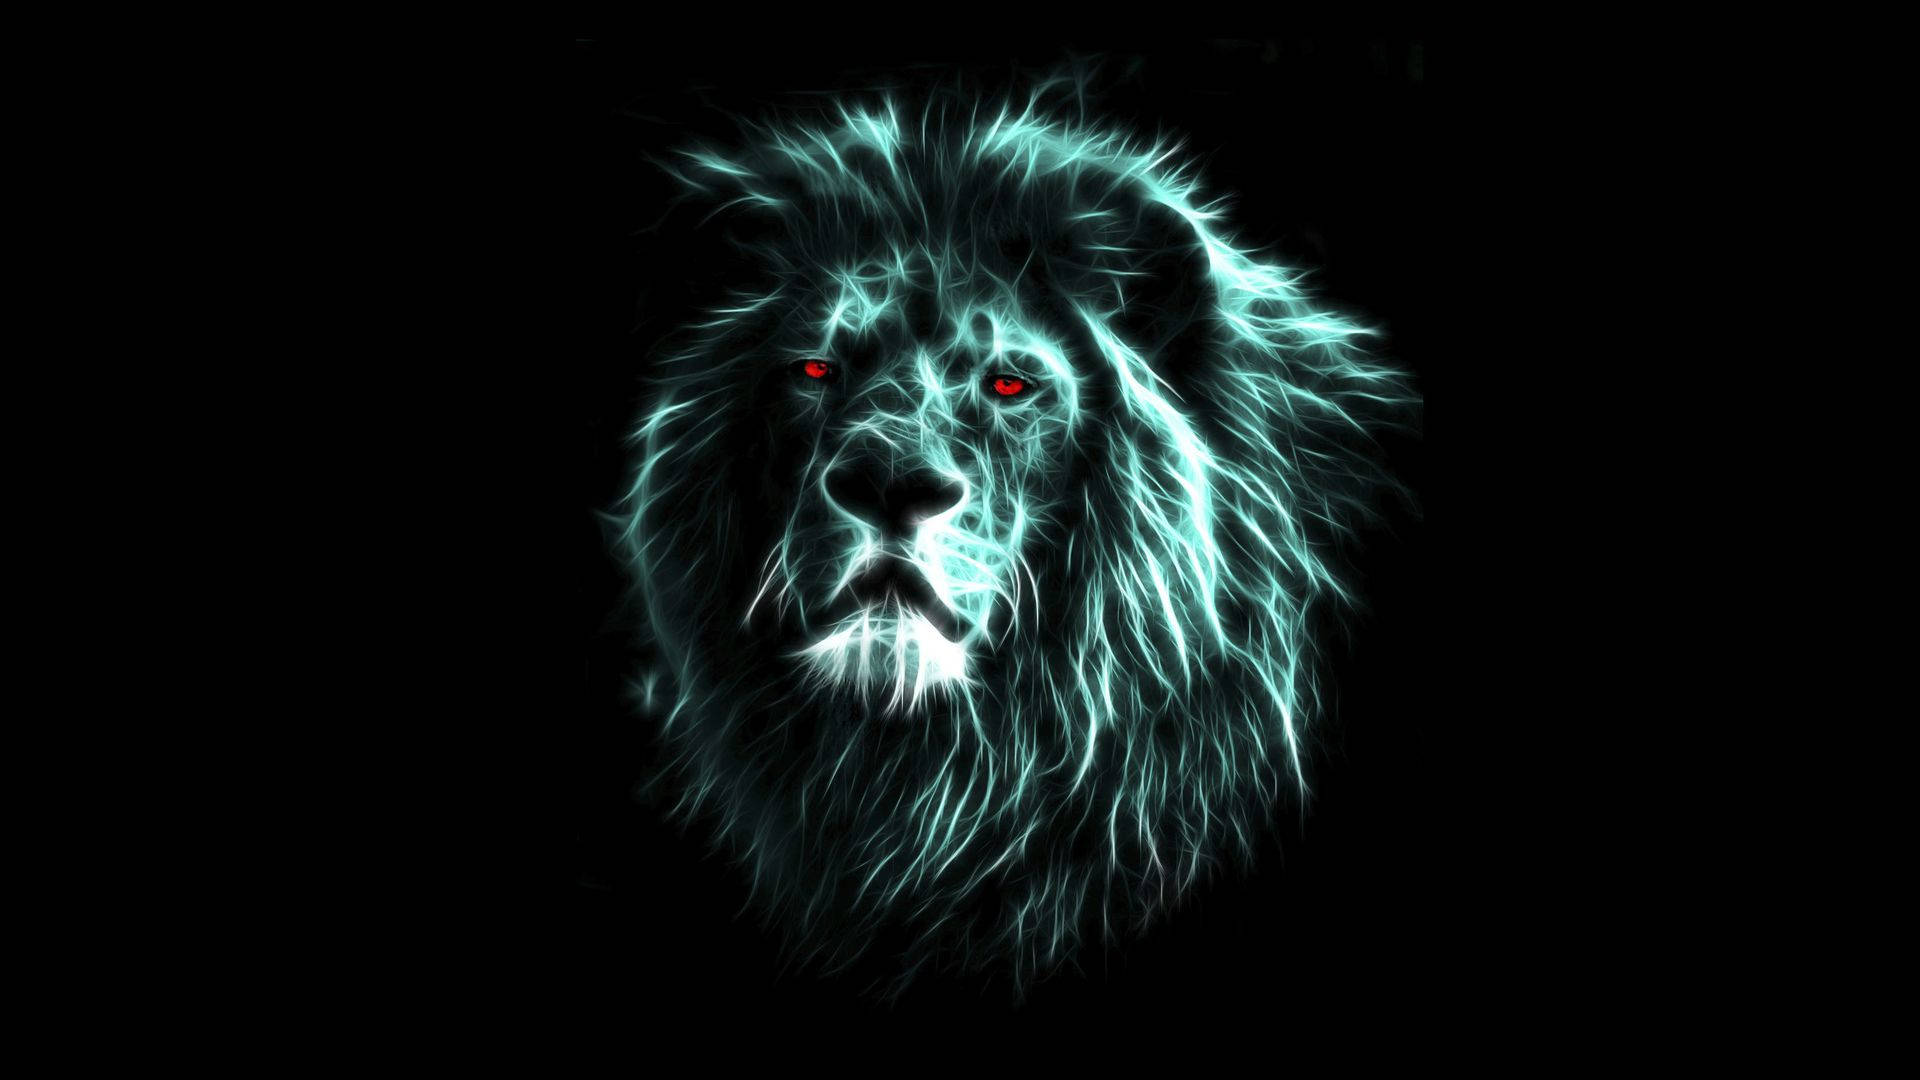 Cool Digital Art Of 3d Lion Wallpaper